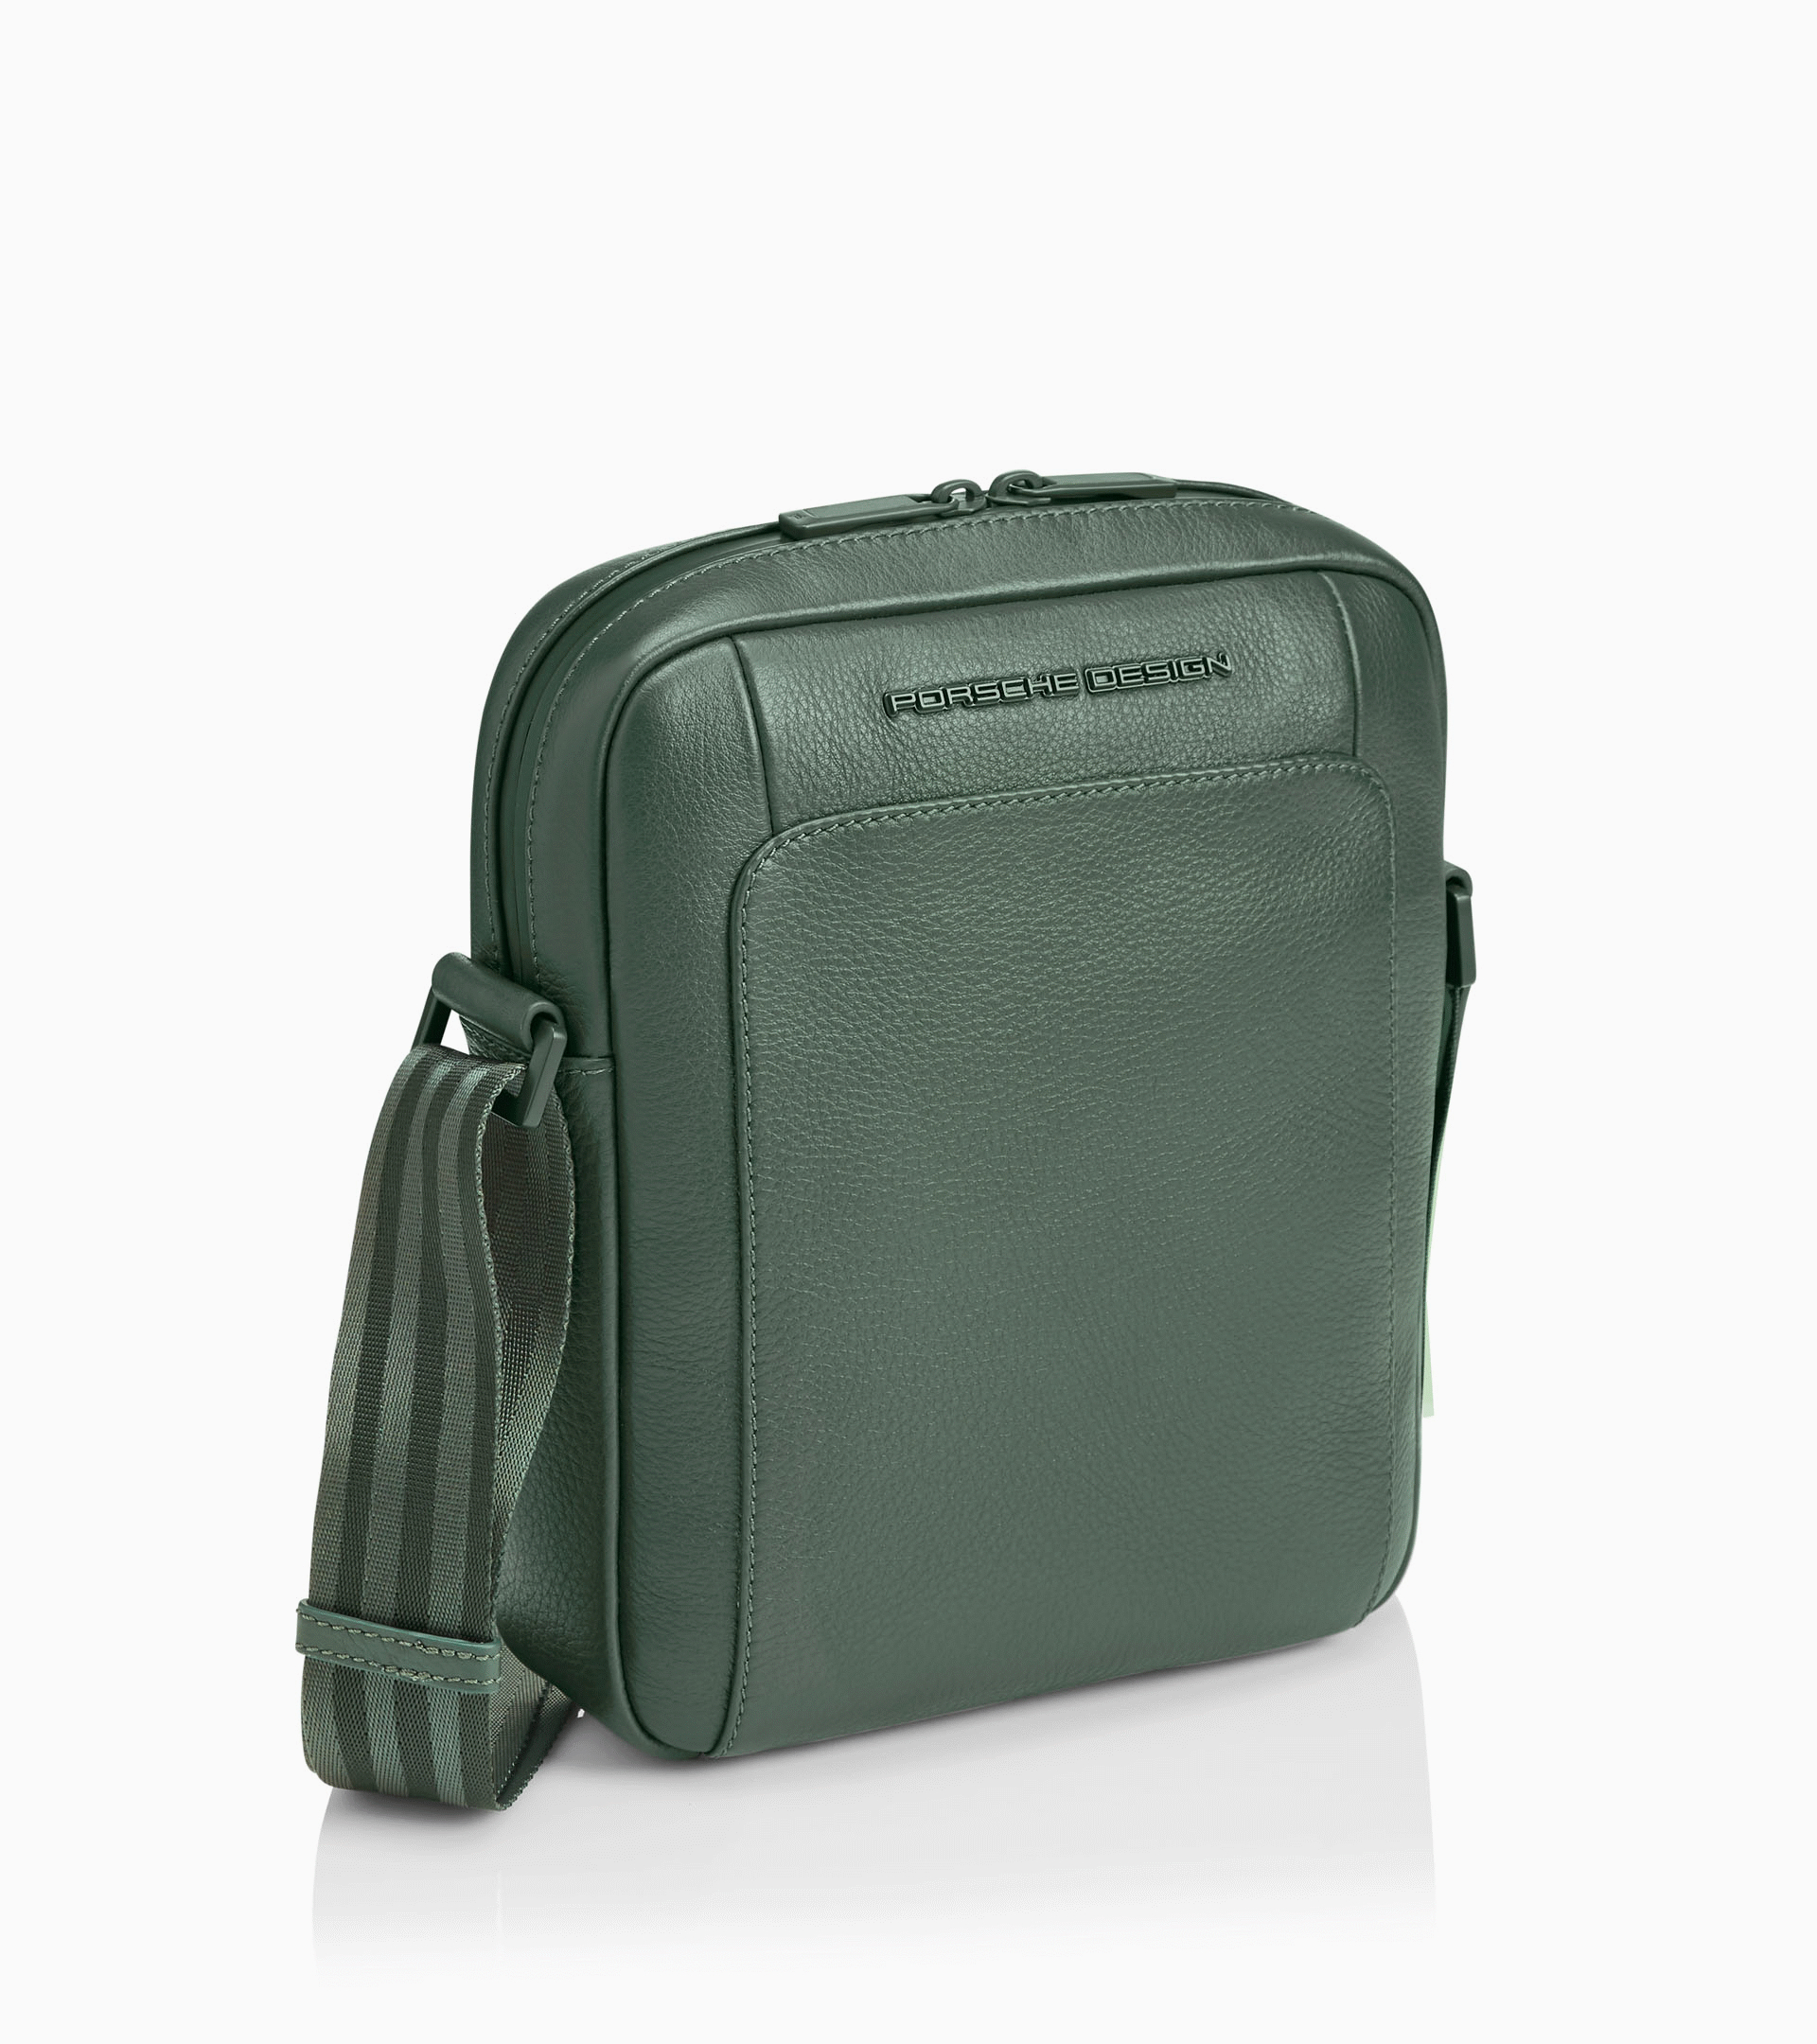 for Huawei Mate 10 Porsche Design Backpack Waist Shoulder bag Nylon  compatibl 8278253016594